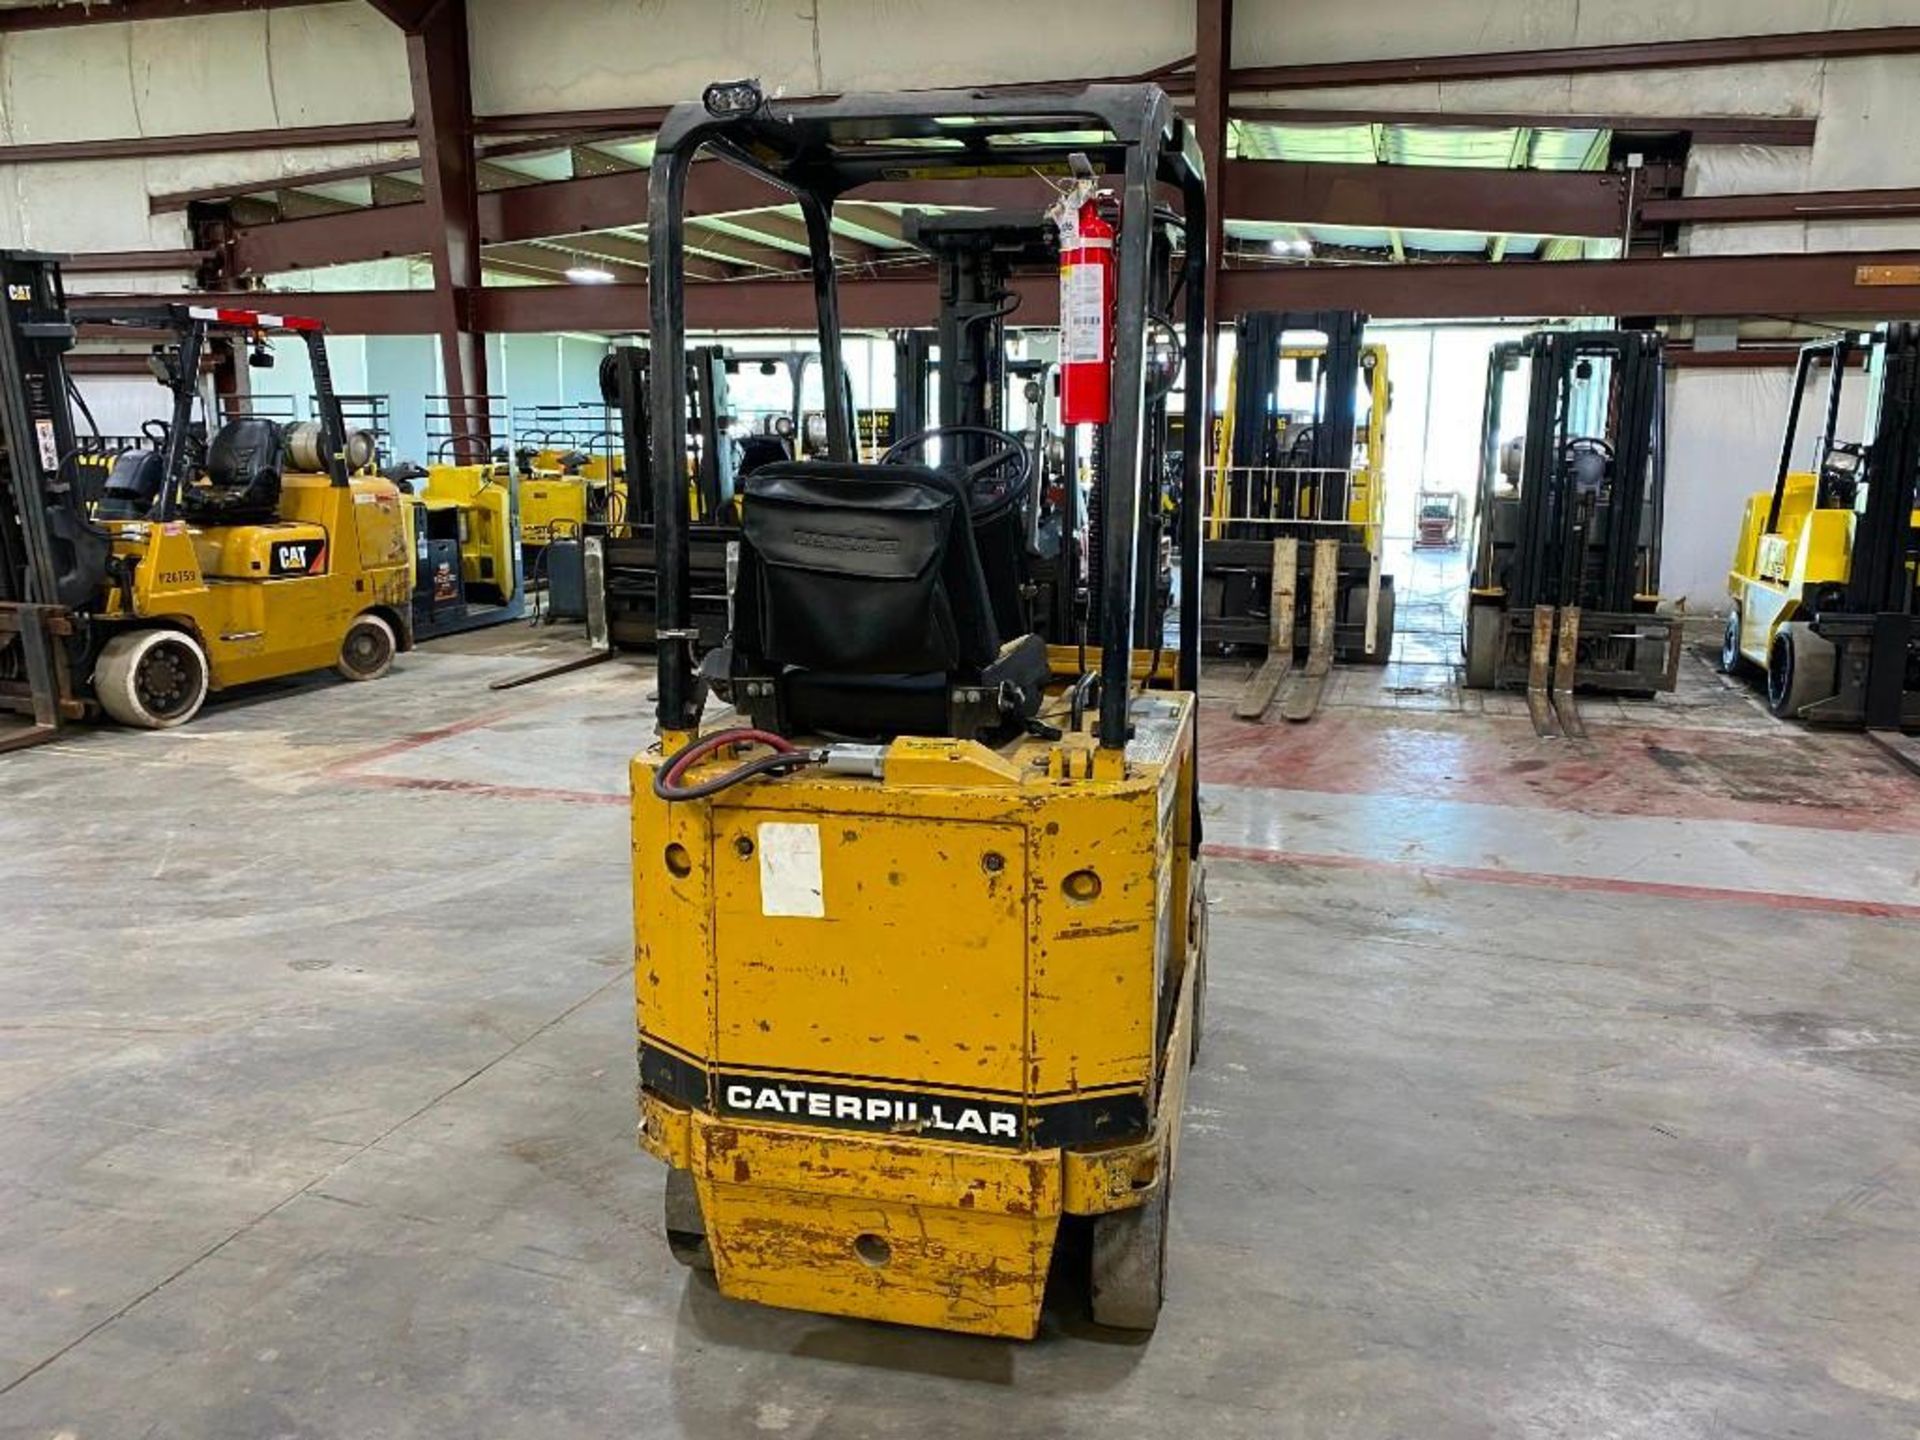 Caterpillar 3,000-Lb. Capacity Forklift, Model M30d, S/N 1kj01682, 36 Volt Battery, Treaded Front Ti - Image 2 of 6